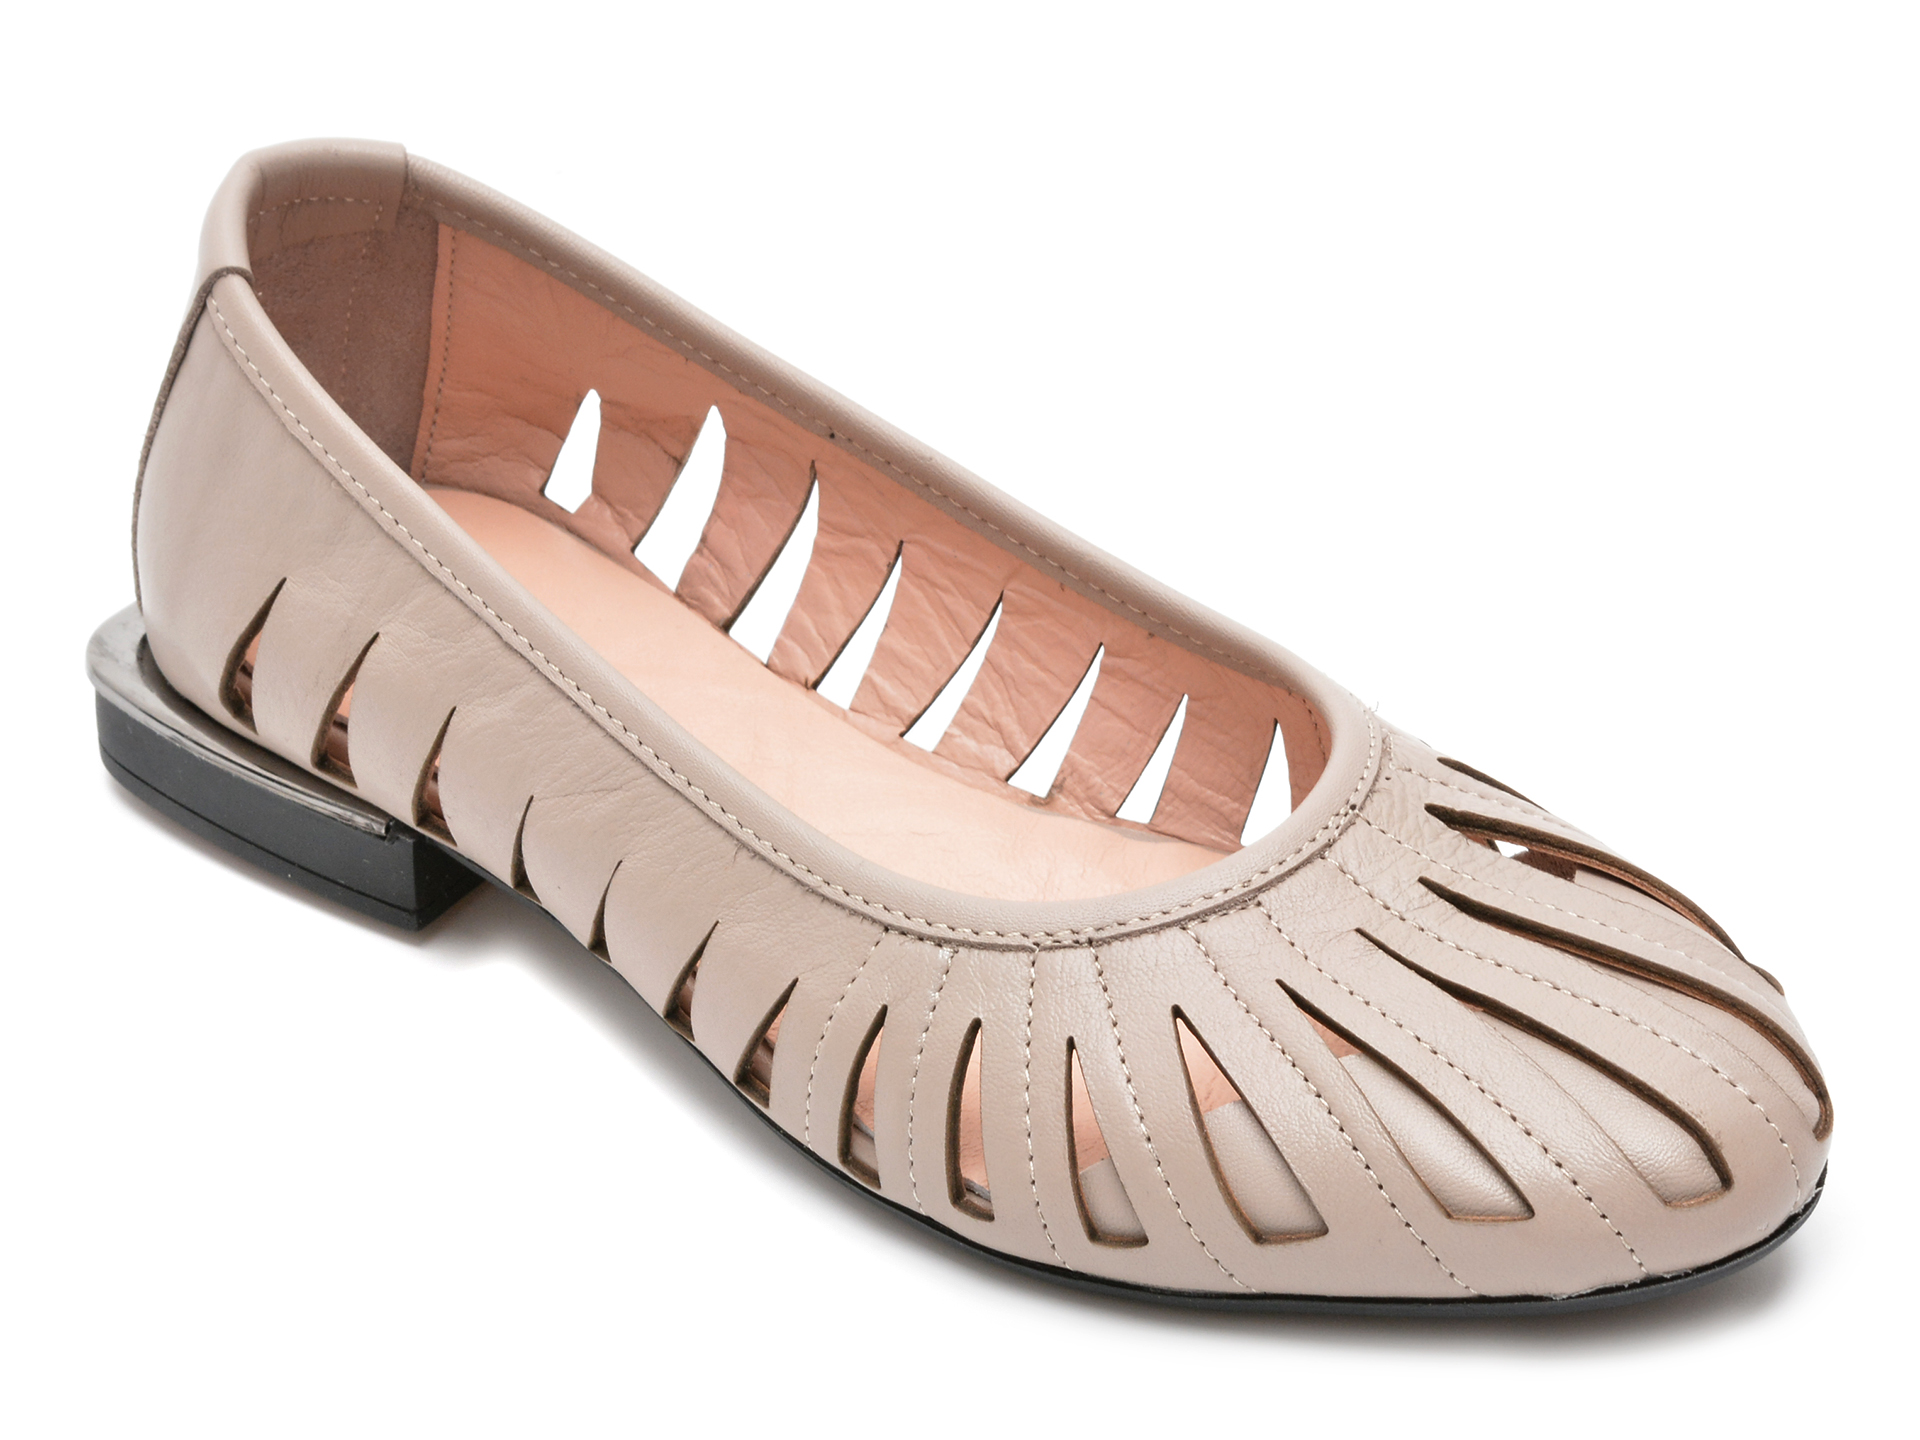 Pantofi FLAVIA PASSINI gri, 10387, din piele naturala Flavia Passini